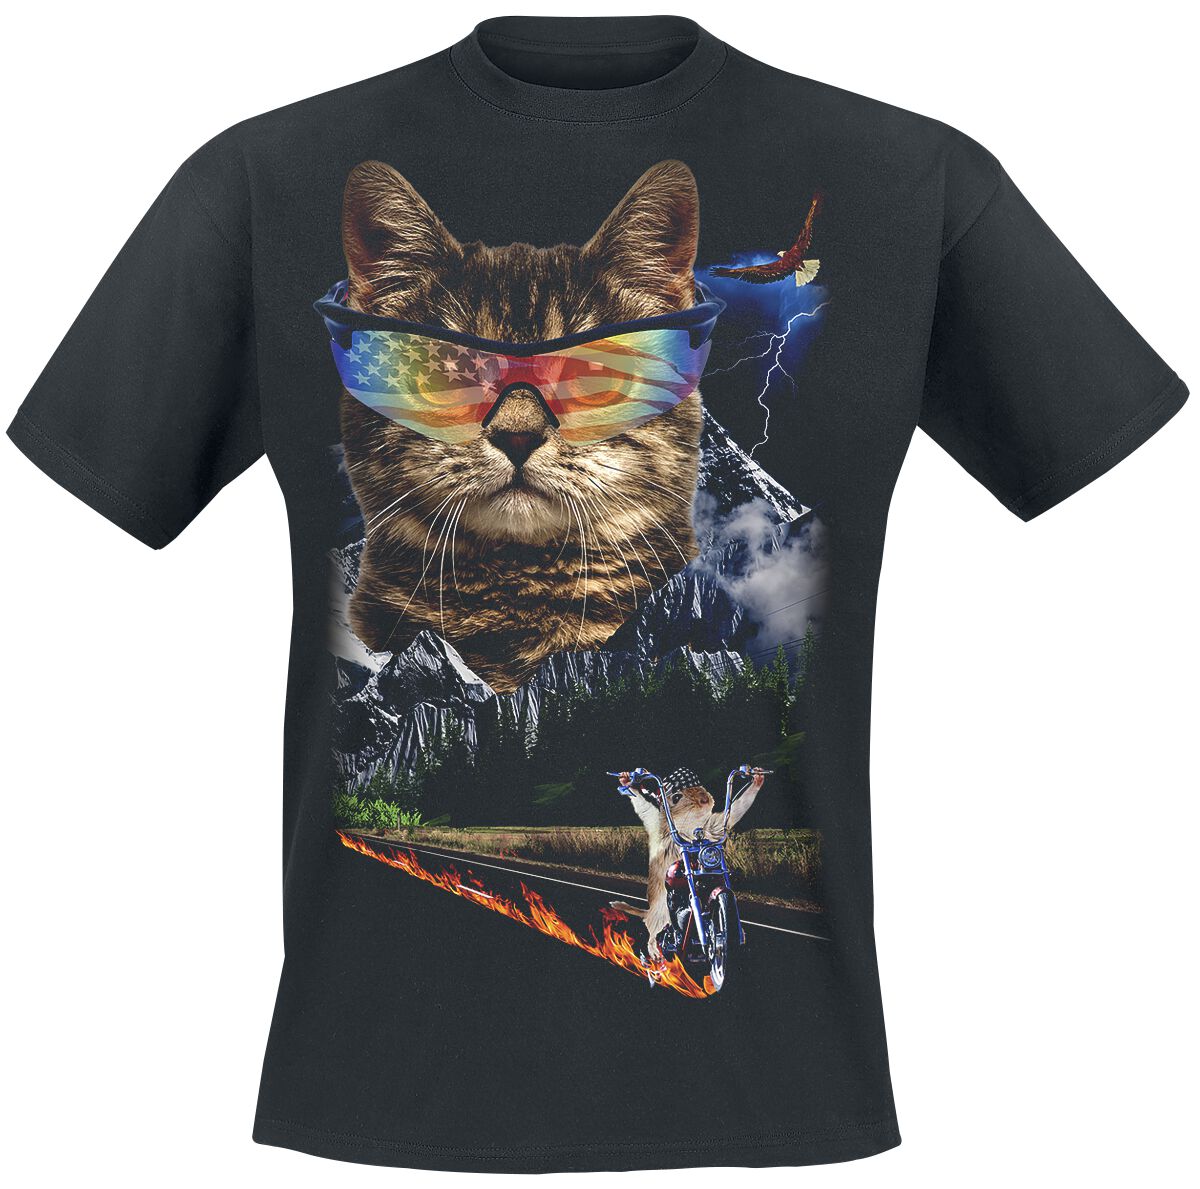 Goodie Two Sleeves T-Shirt - Meow For Freedom - S bis 4XL - für Männer - Größe 3XL - schwarz